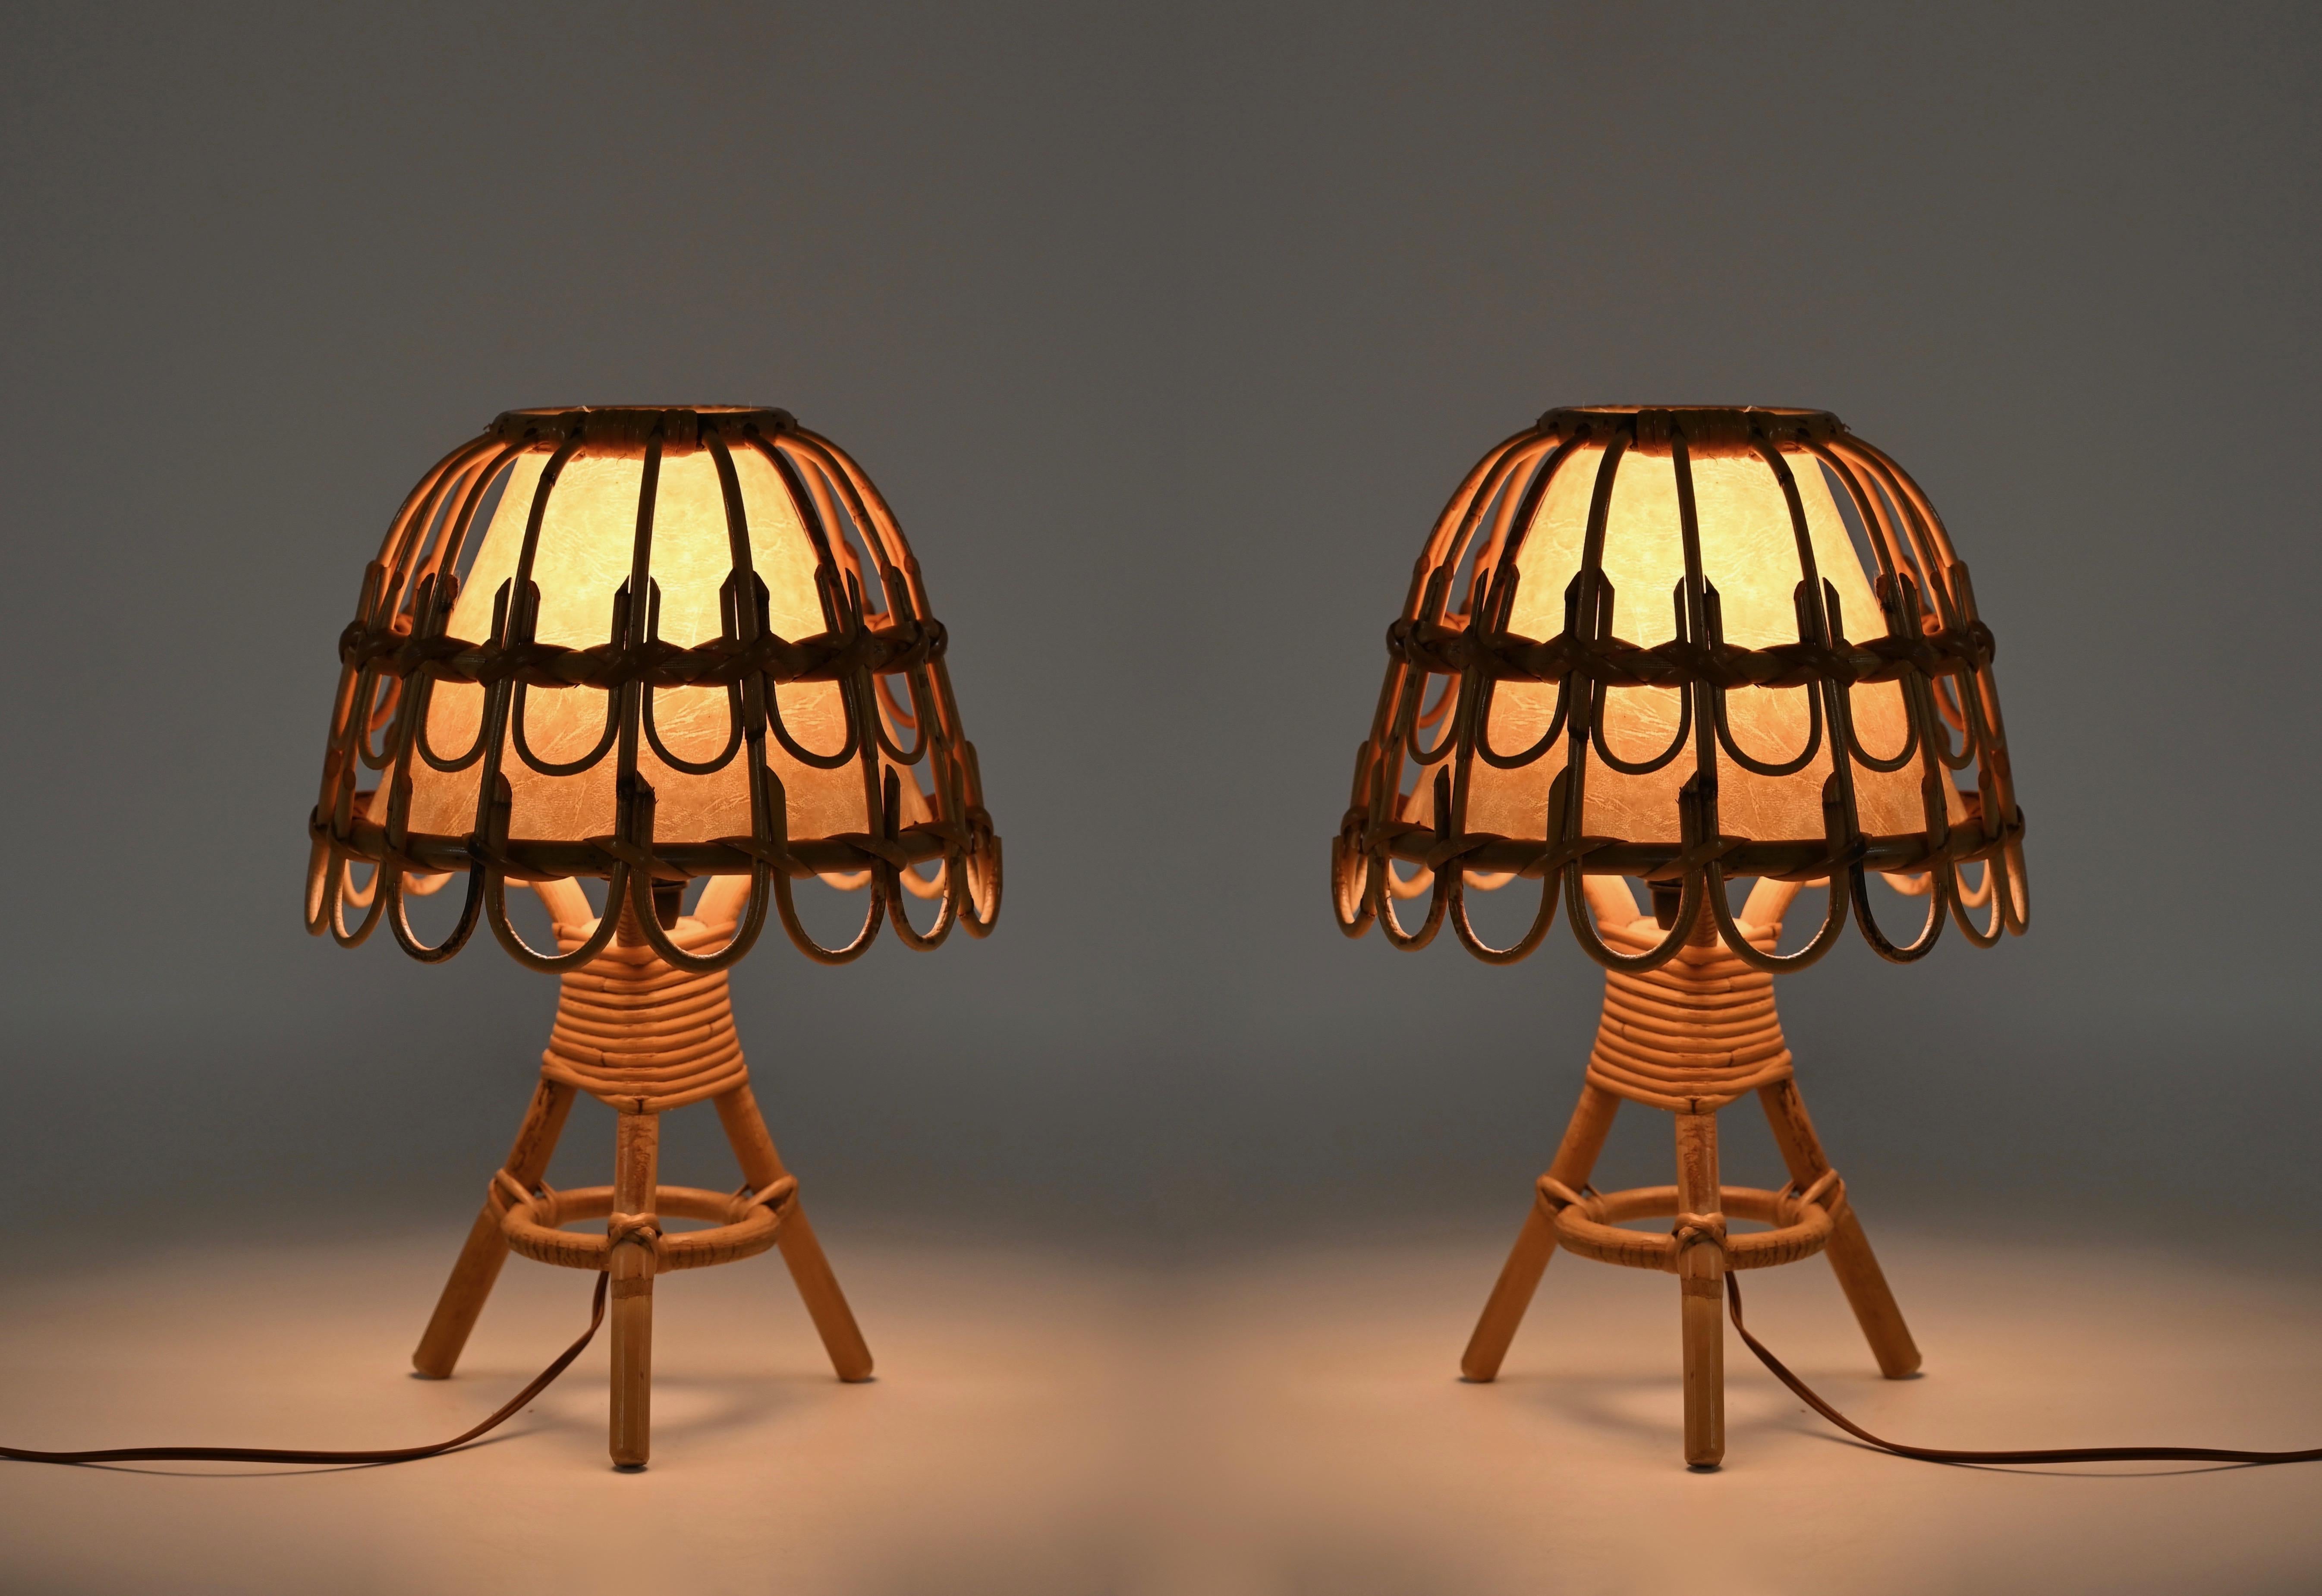 Wunderschönes Paar Tischlampen im französischen Riviera-Stil aus gebogenem Rattan und handgeflochtener Weide. Diese phantastischen Lampen wurden in den 1960er Jahren in Frankreich hergestellt und sind dem Meister Louis Sognot zu verdanken.  

Die